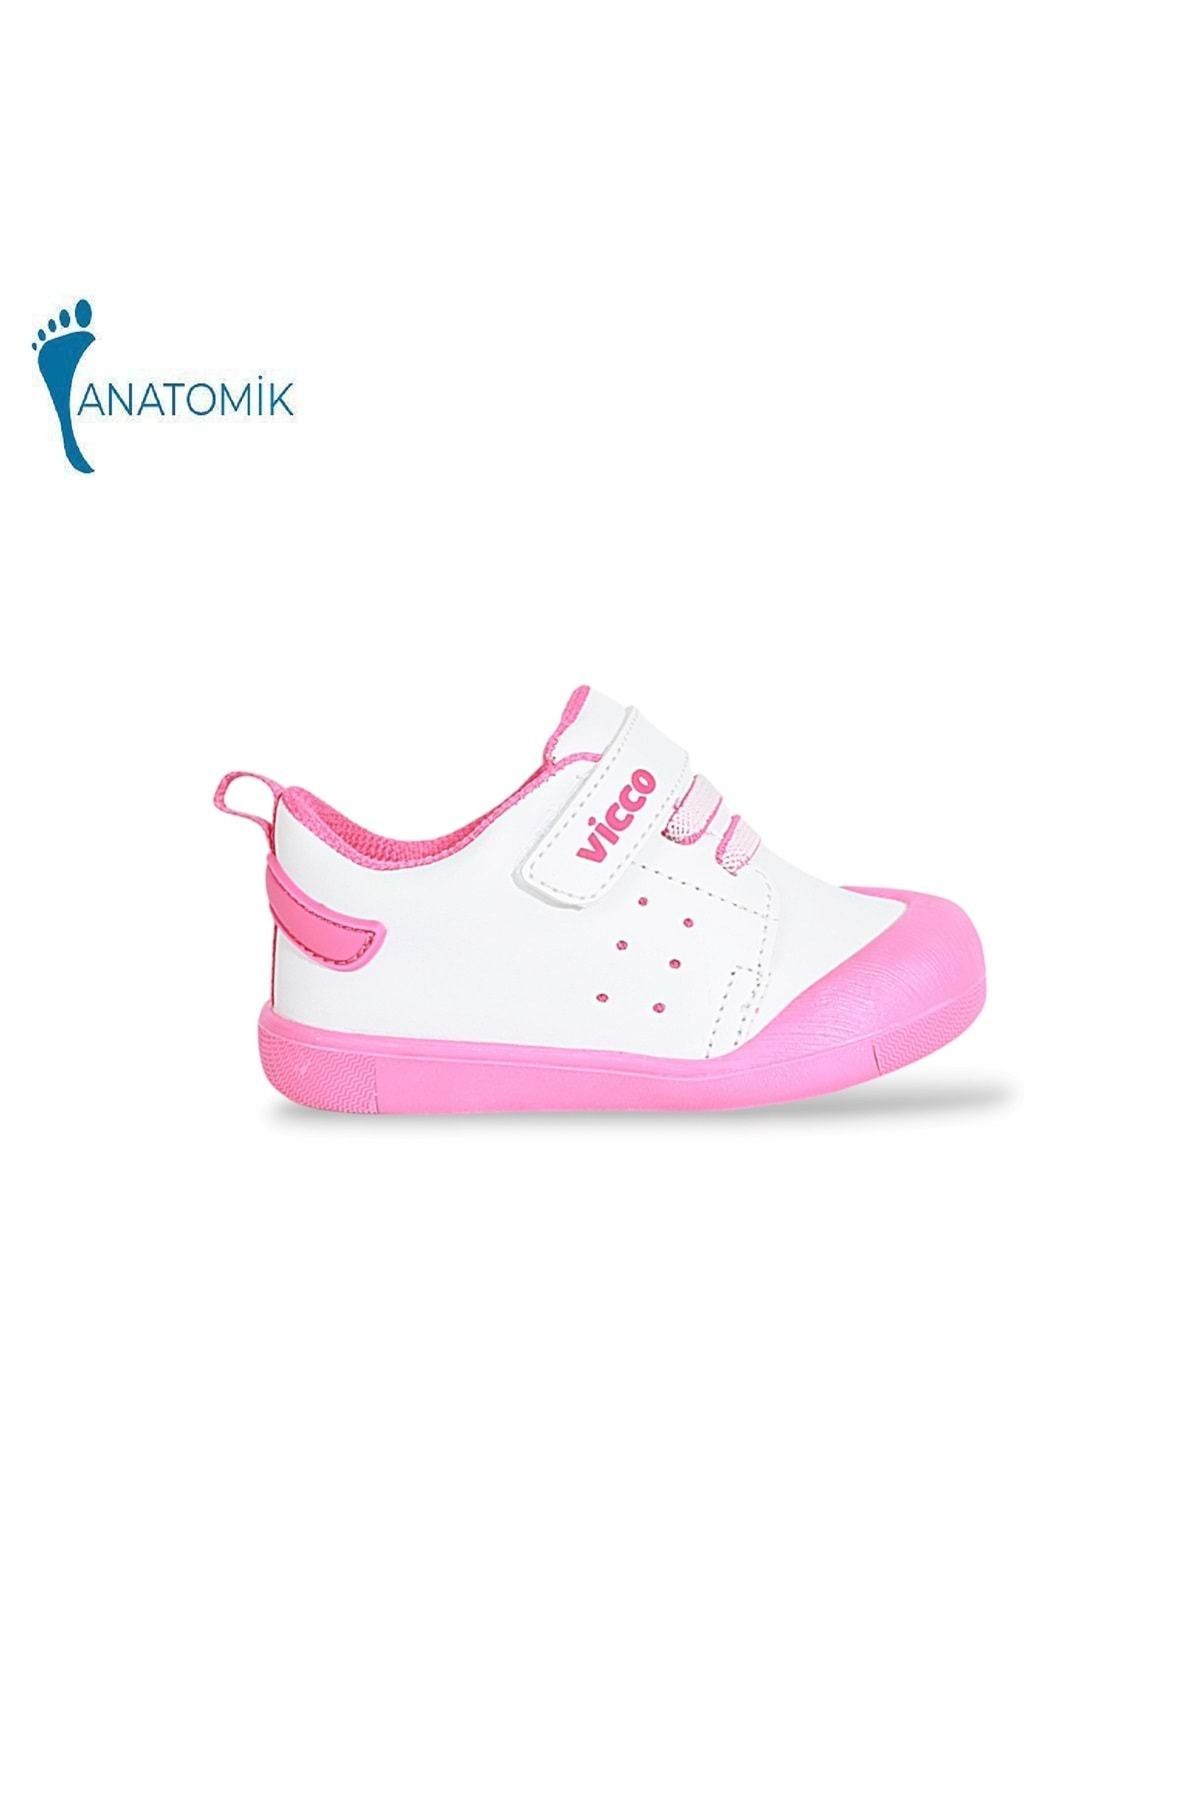 Vicco 950.E23Y.211 İlk Adım Anatomik Tabanlı Bebek Ayakkabısı - NKT01837-beyaz pembe-19